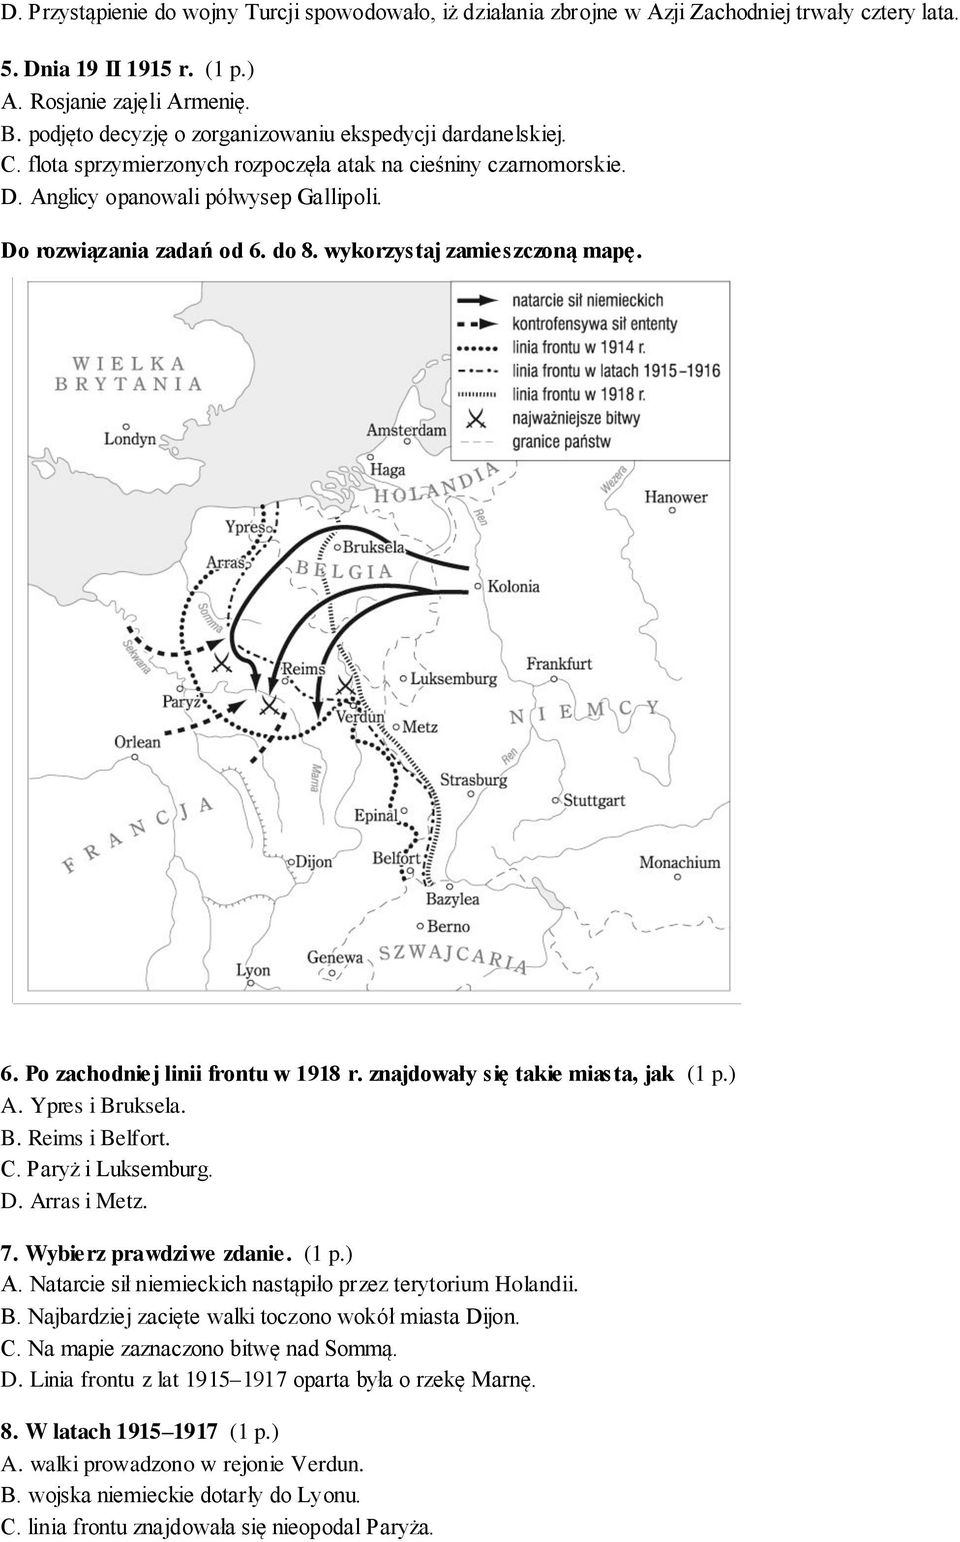 wykorzystaj zamieszczoną mapę. 6. Po zachodniej linii frontu w 1918 r. znajdowały się takie miasta, jak (1 p.) A. Ypres i Bruksela. B. Reims i Belfort. C. Paryż i Luksemburg. D. Arras i Metz. 7.